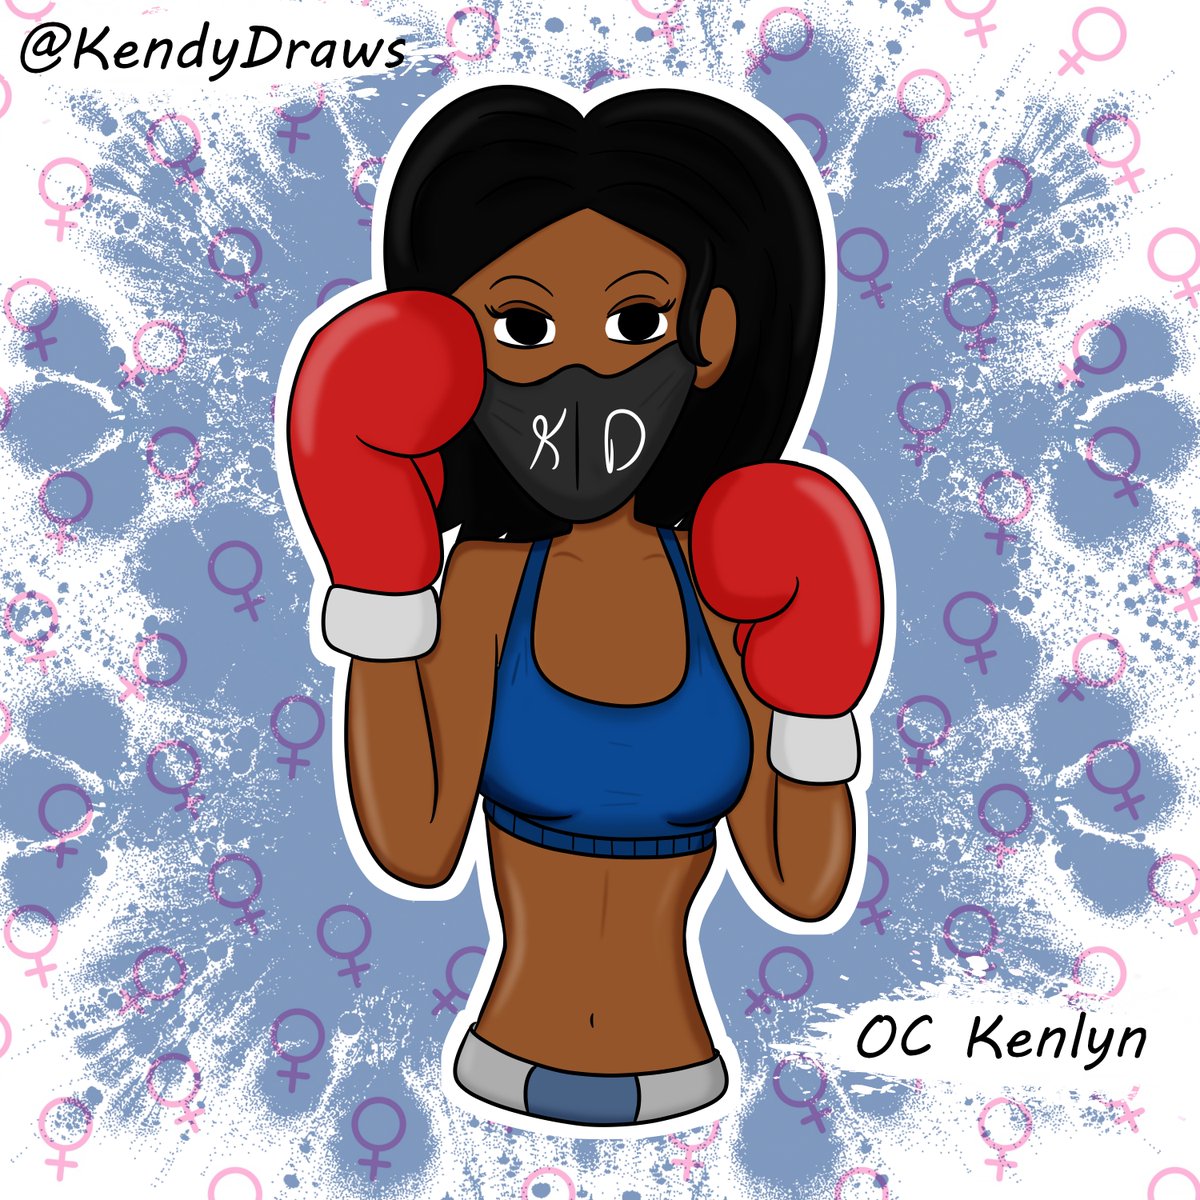 OC Kenlyn Boxer

#KendyDraws #trinidadartist #triniartist #trinidad #art #arte #artist #OC #originalart #Original #artist #artistontwittter #OCKenlyn #Kenlyn #genderbend #drawings #boxing #ボクシング #女子ボクシング